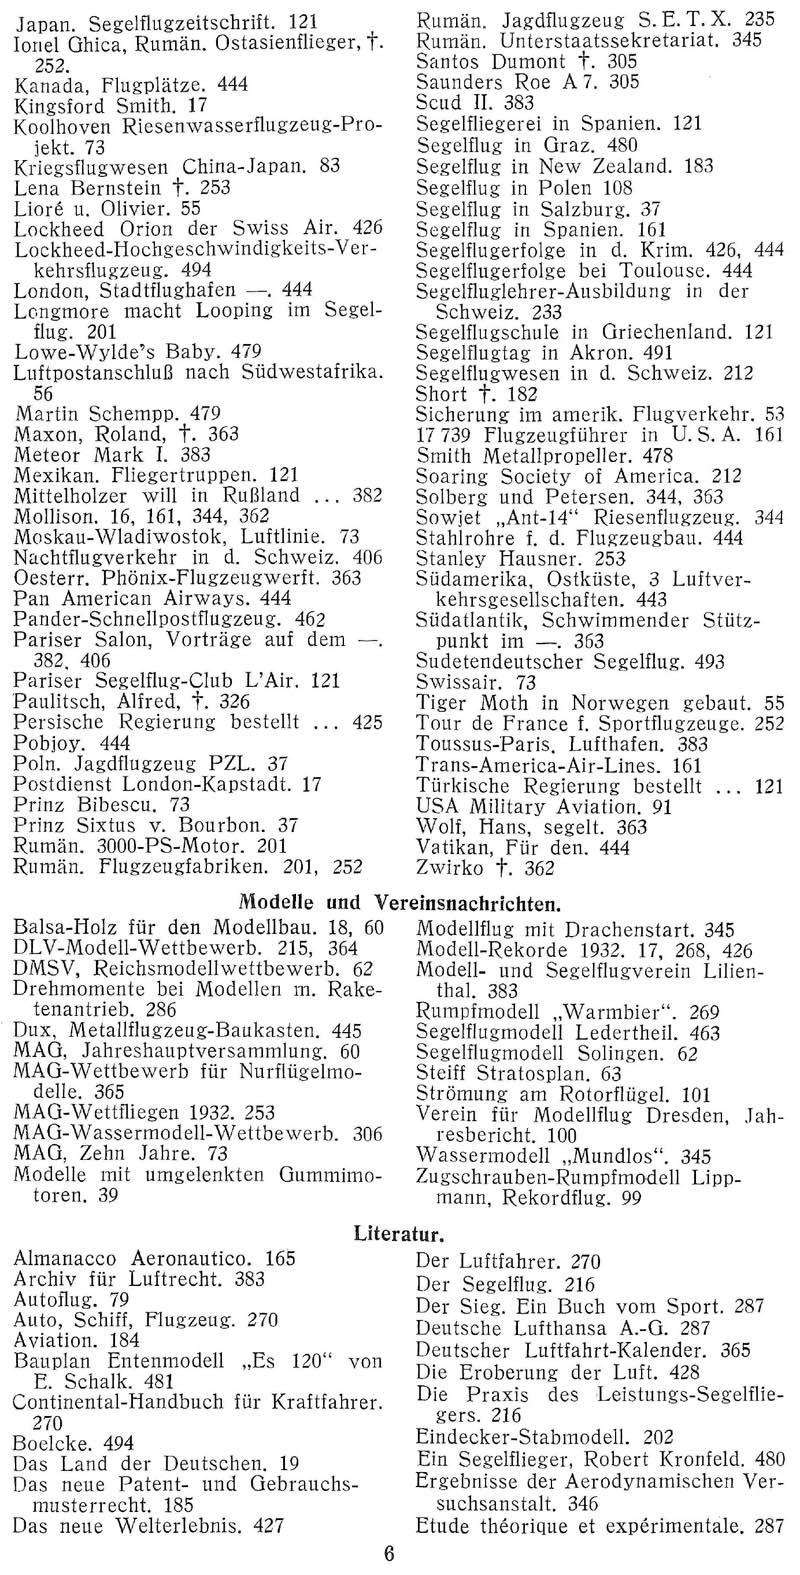 Sachregister und Inhaltsverzeichnis der Zeitschrift Flugsport für das Jahr 1932